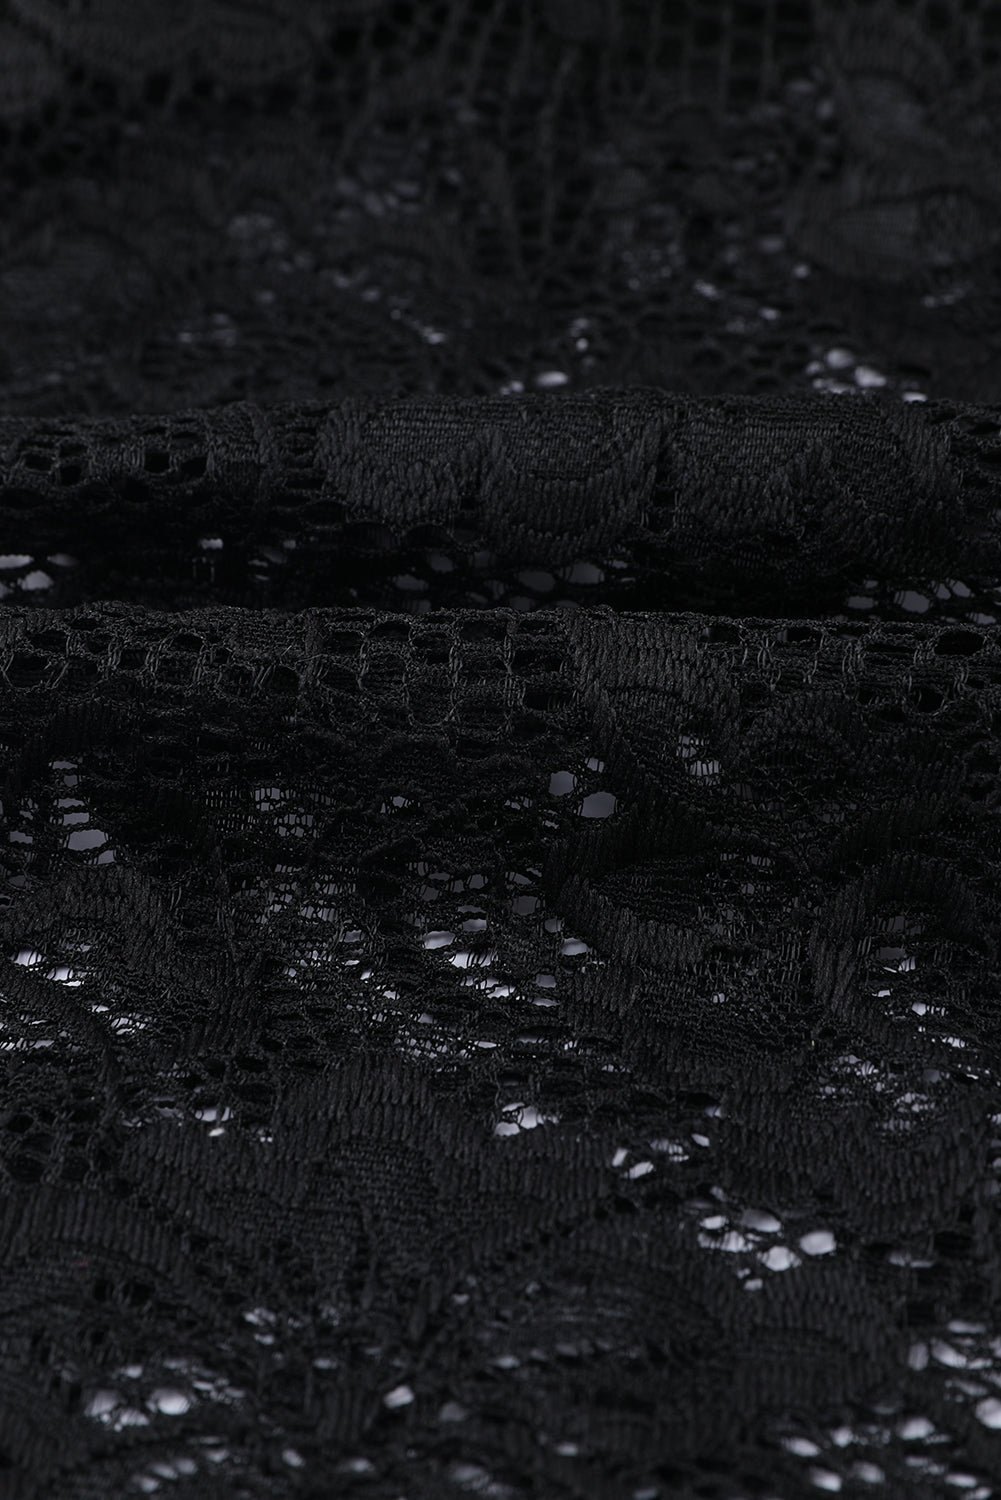 Black Floral Lace Scalloped Square Neck Bodysuit Bodysuits JT's Designer Fashion